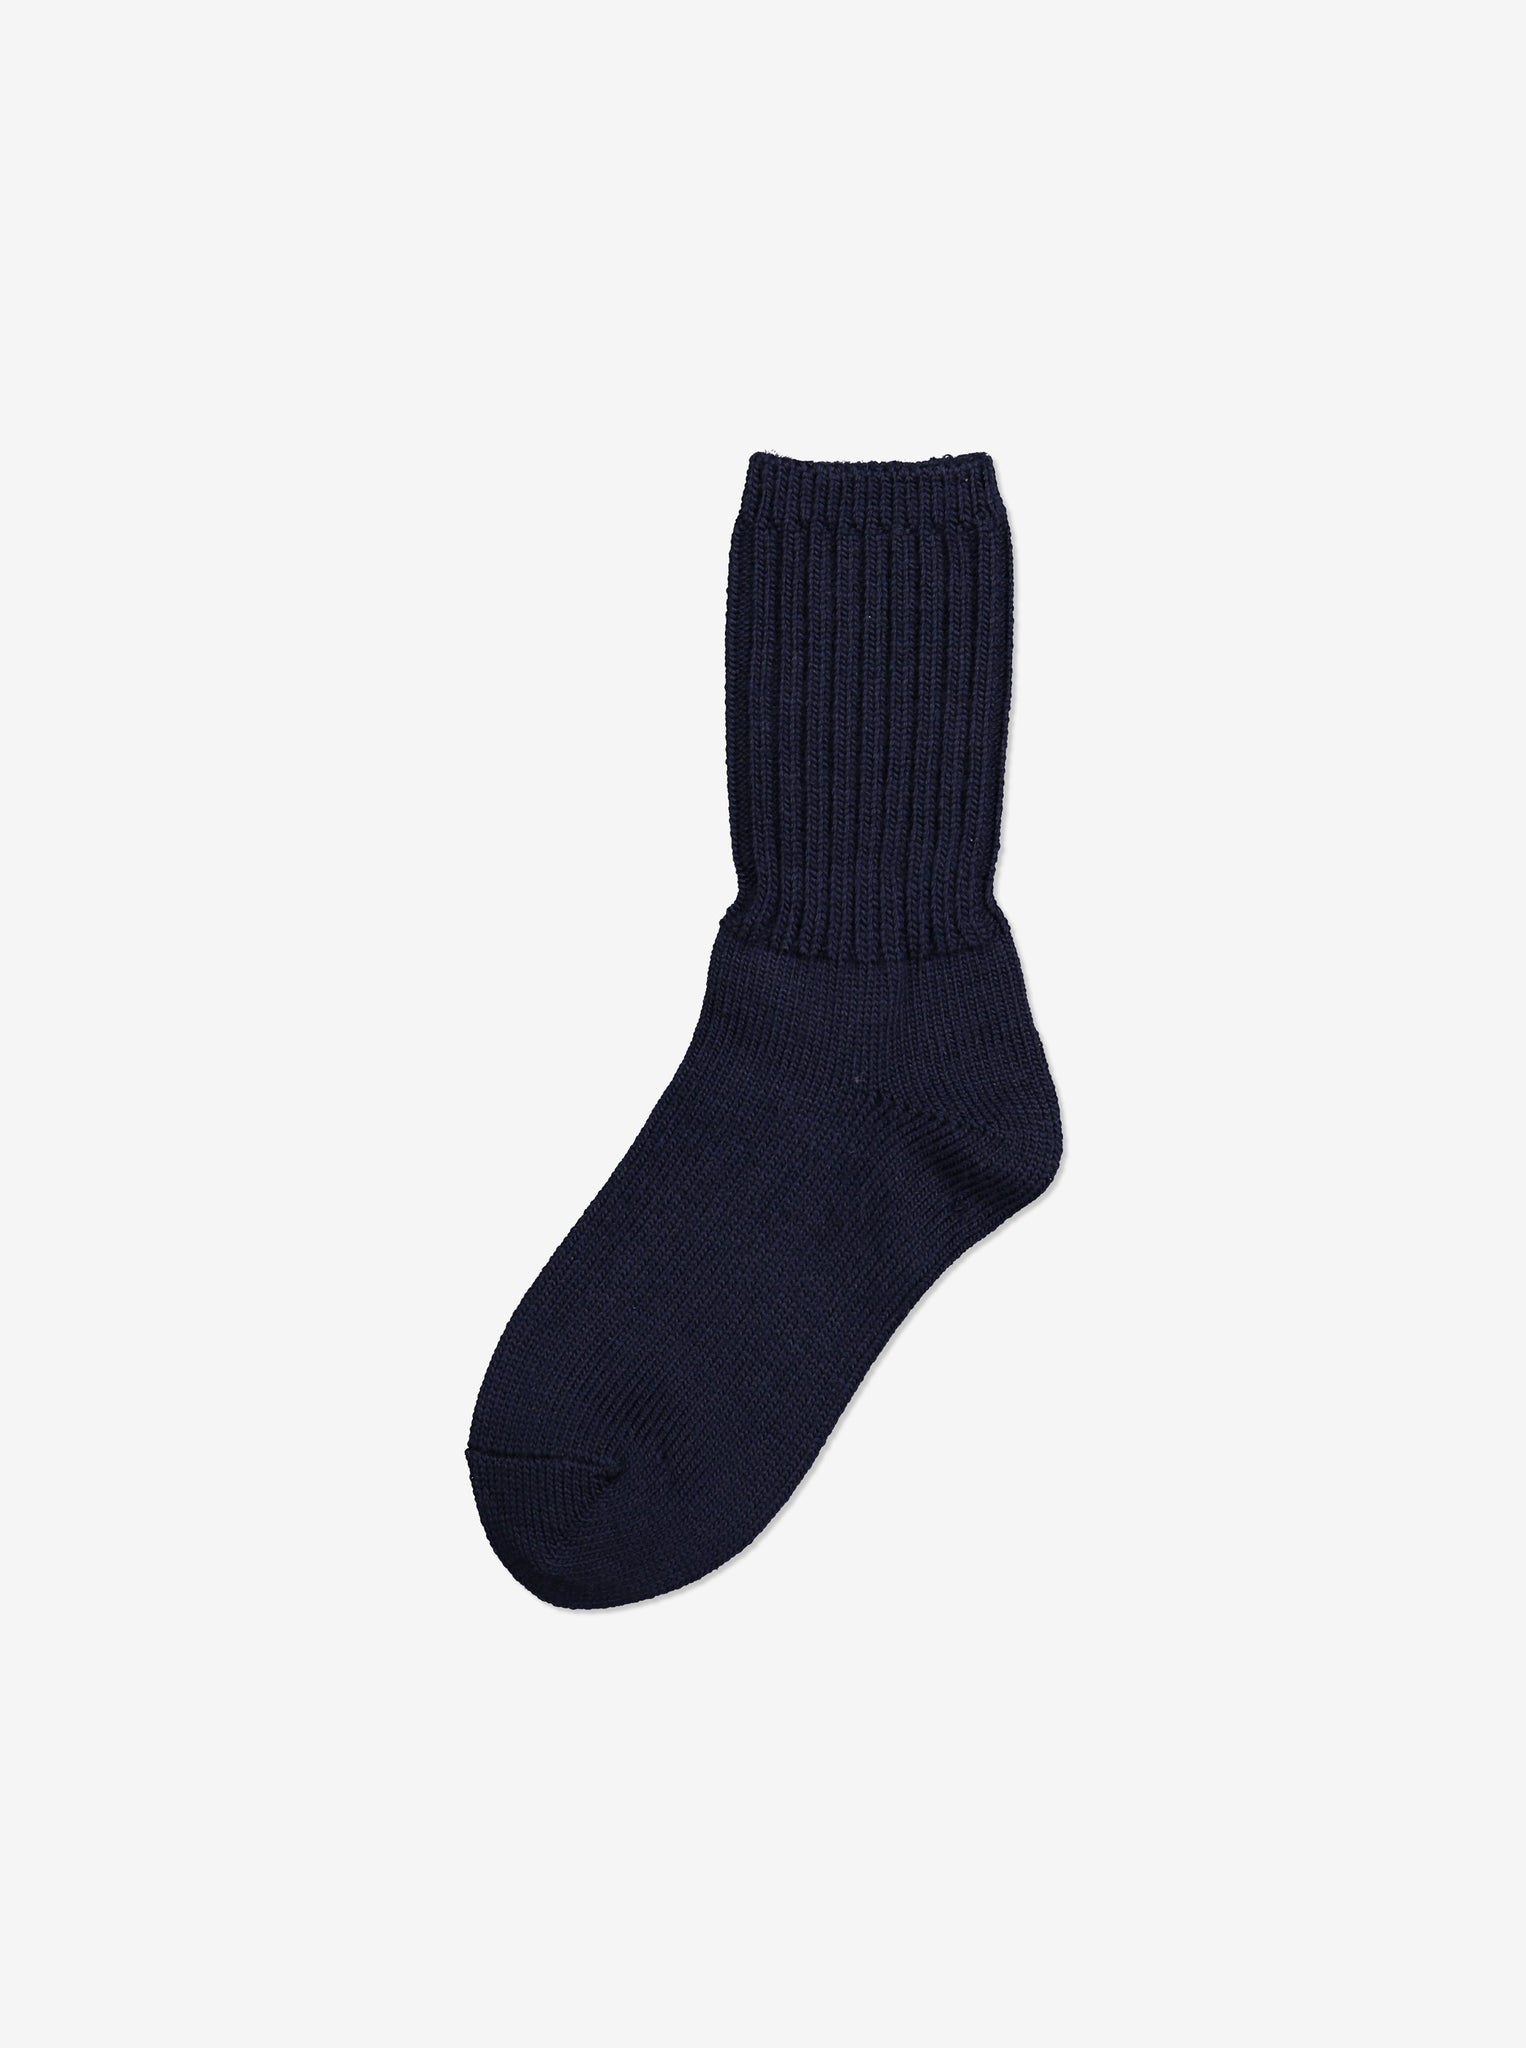 Merino Wool Navy Kids Thermal Socks | Polarn O. Pyret UK